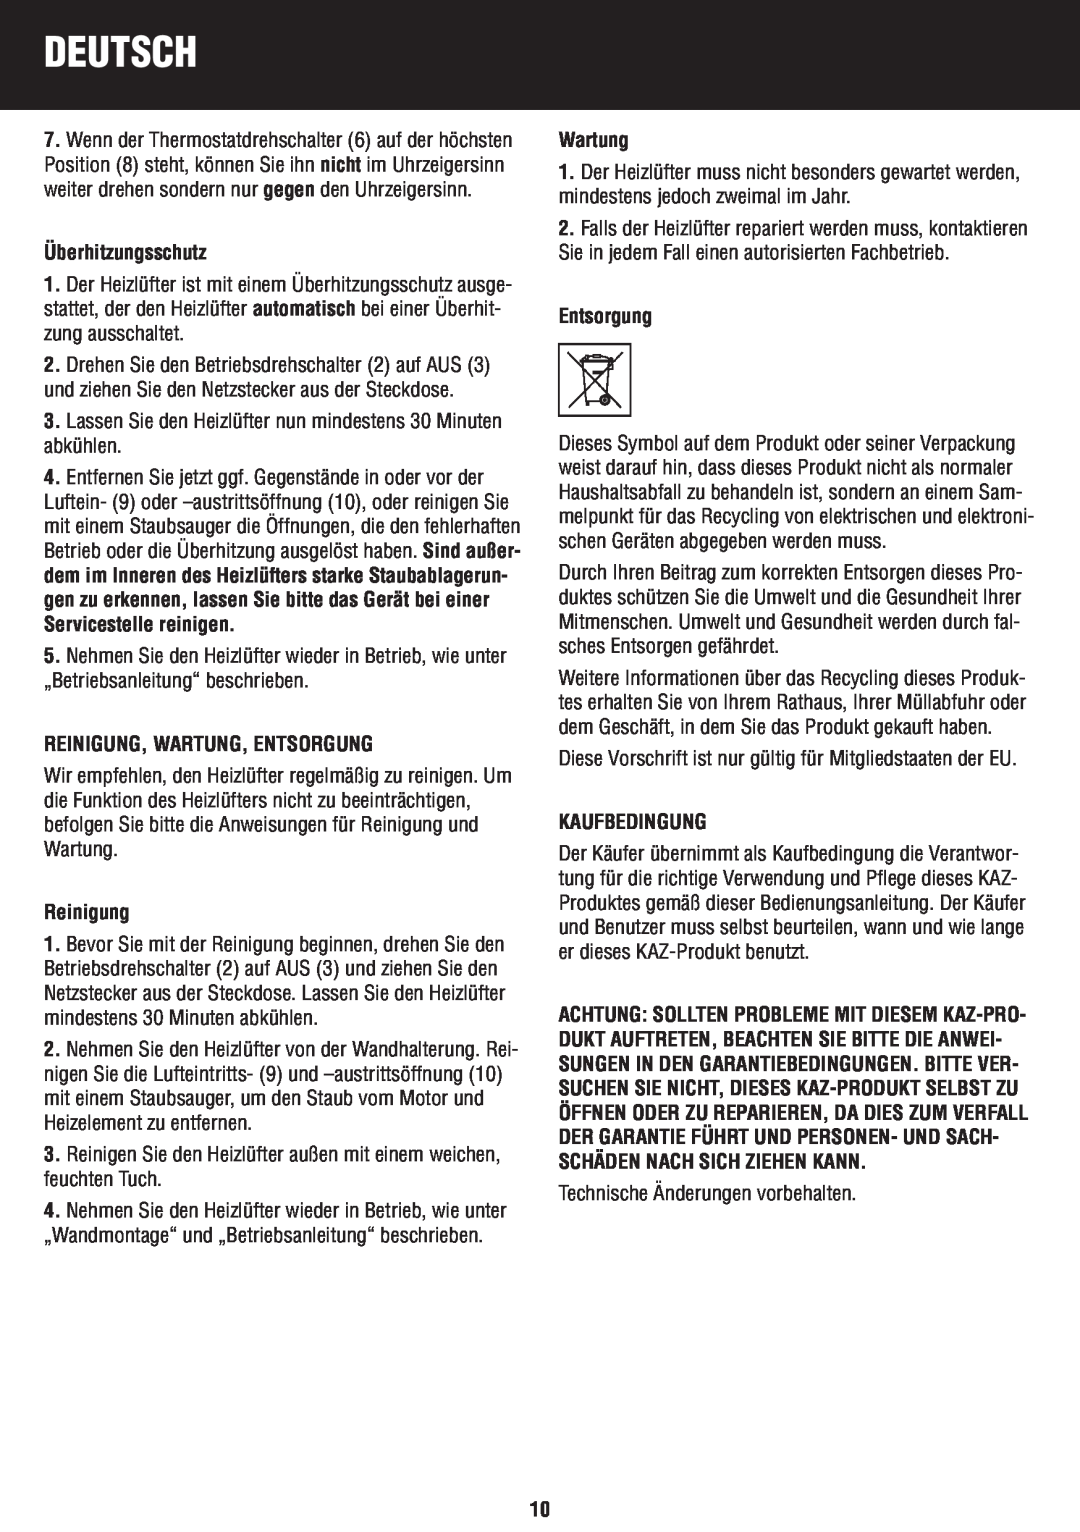 Honeywell BH-777FTE manual do utilizador Überhitzungsschutz, Reinigung, Wartung, Entsorgung, Kaufbedingung, Deutsch 